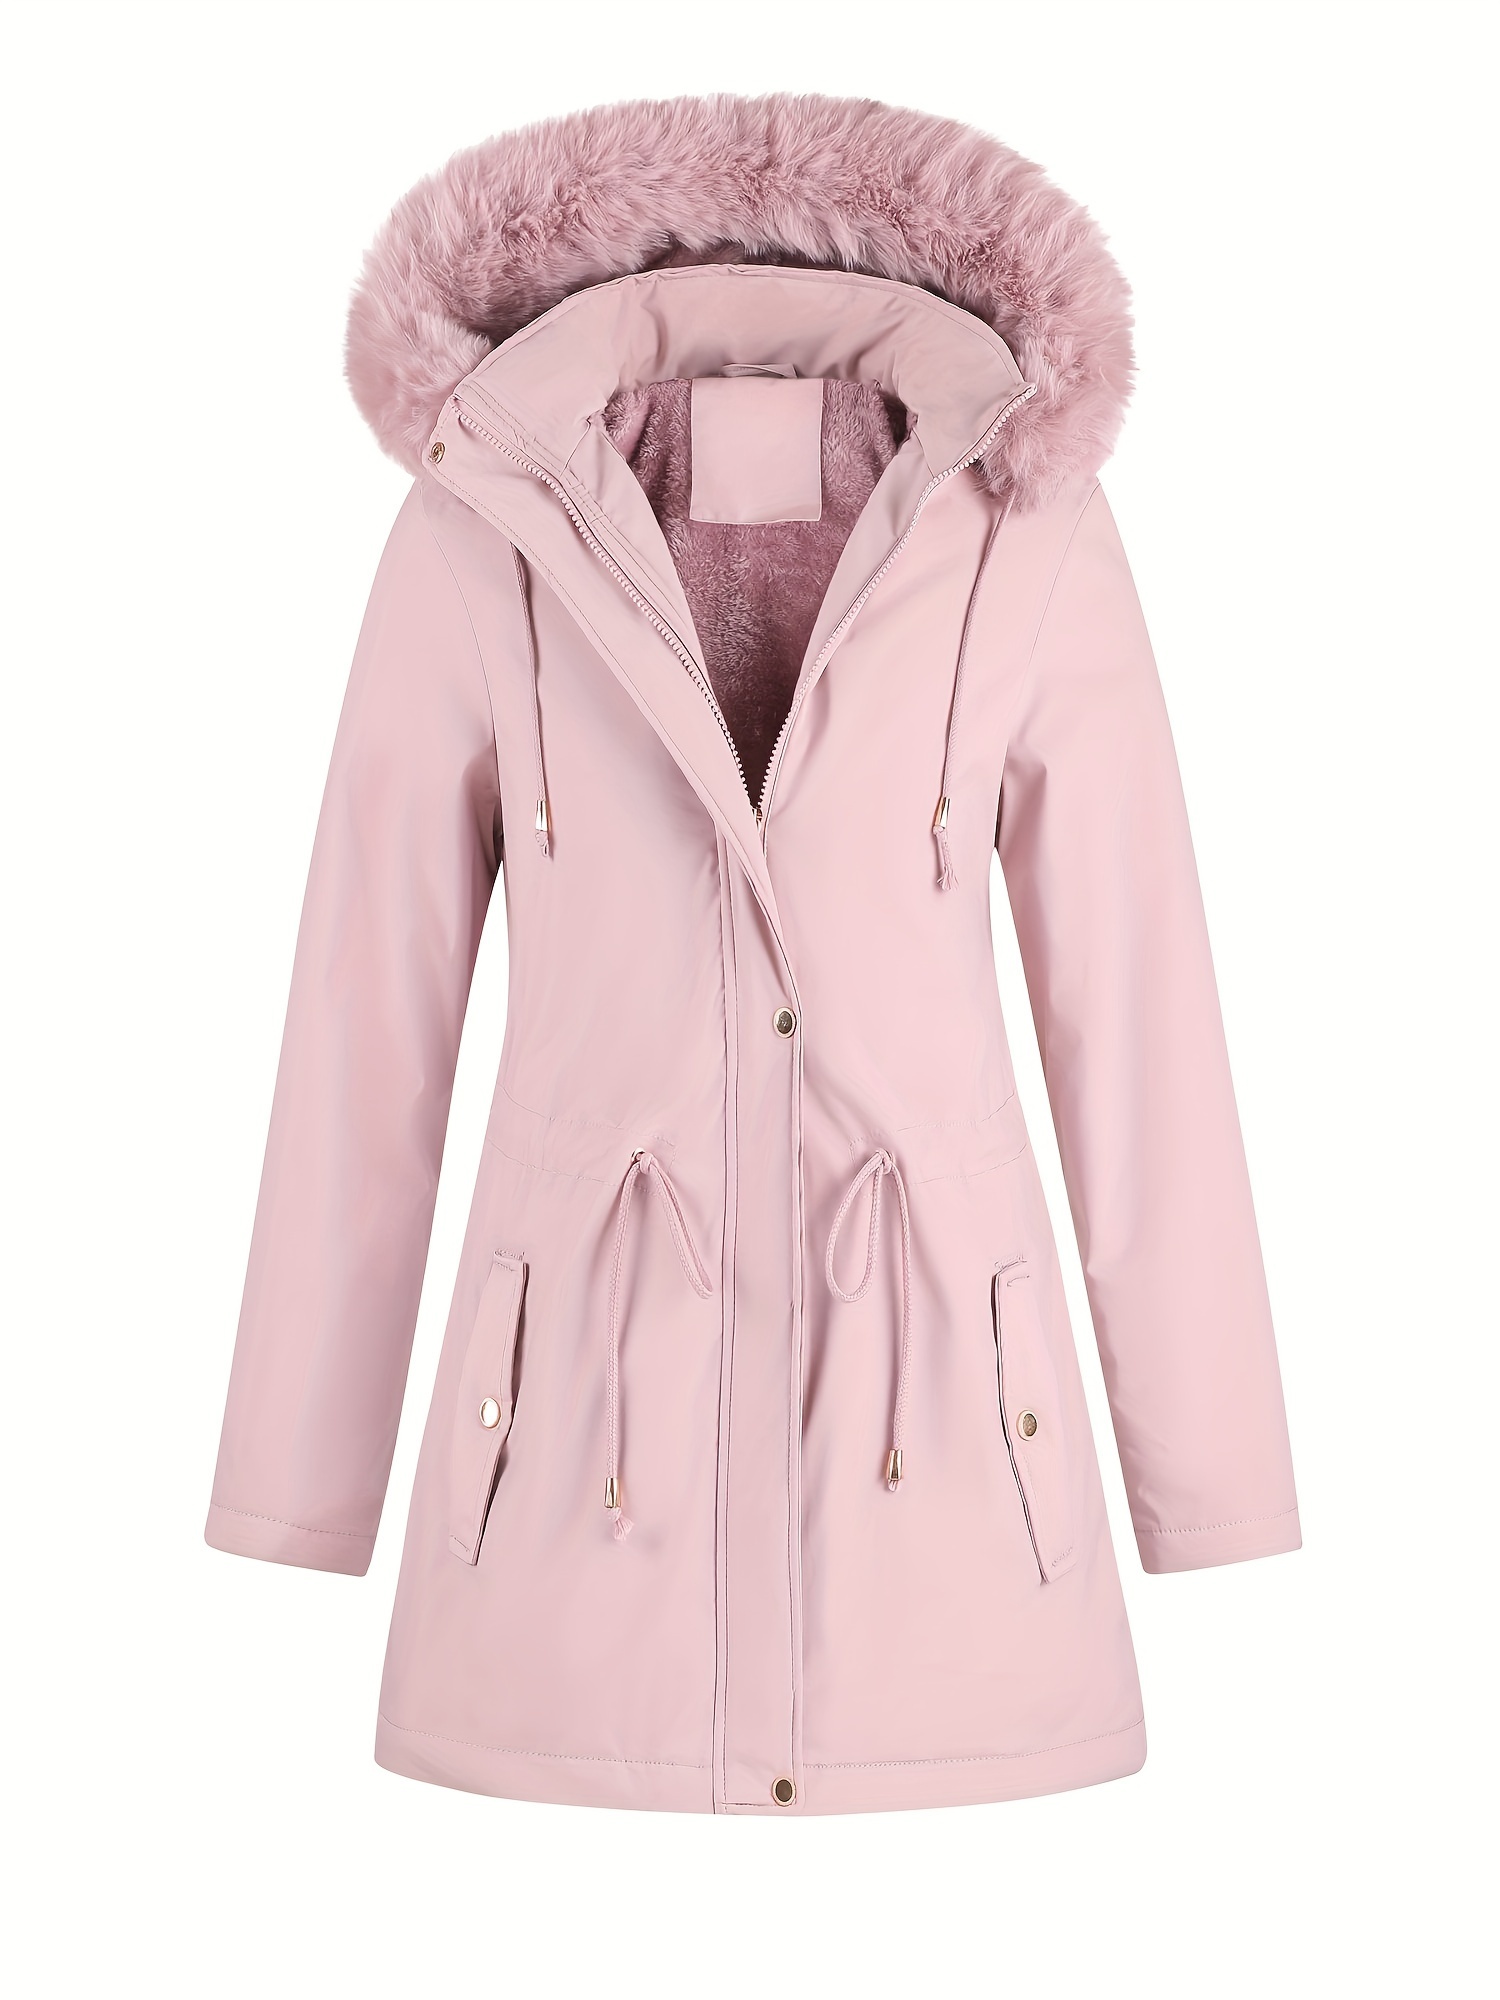 Beautiful 2021 Women Winter Jackets Coats 4Hooded Parkas Femmino Warm  Outwear Faux Fur Collar Female Jacket -SKD001FFJ